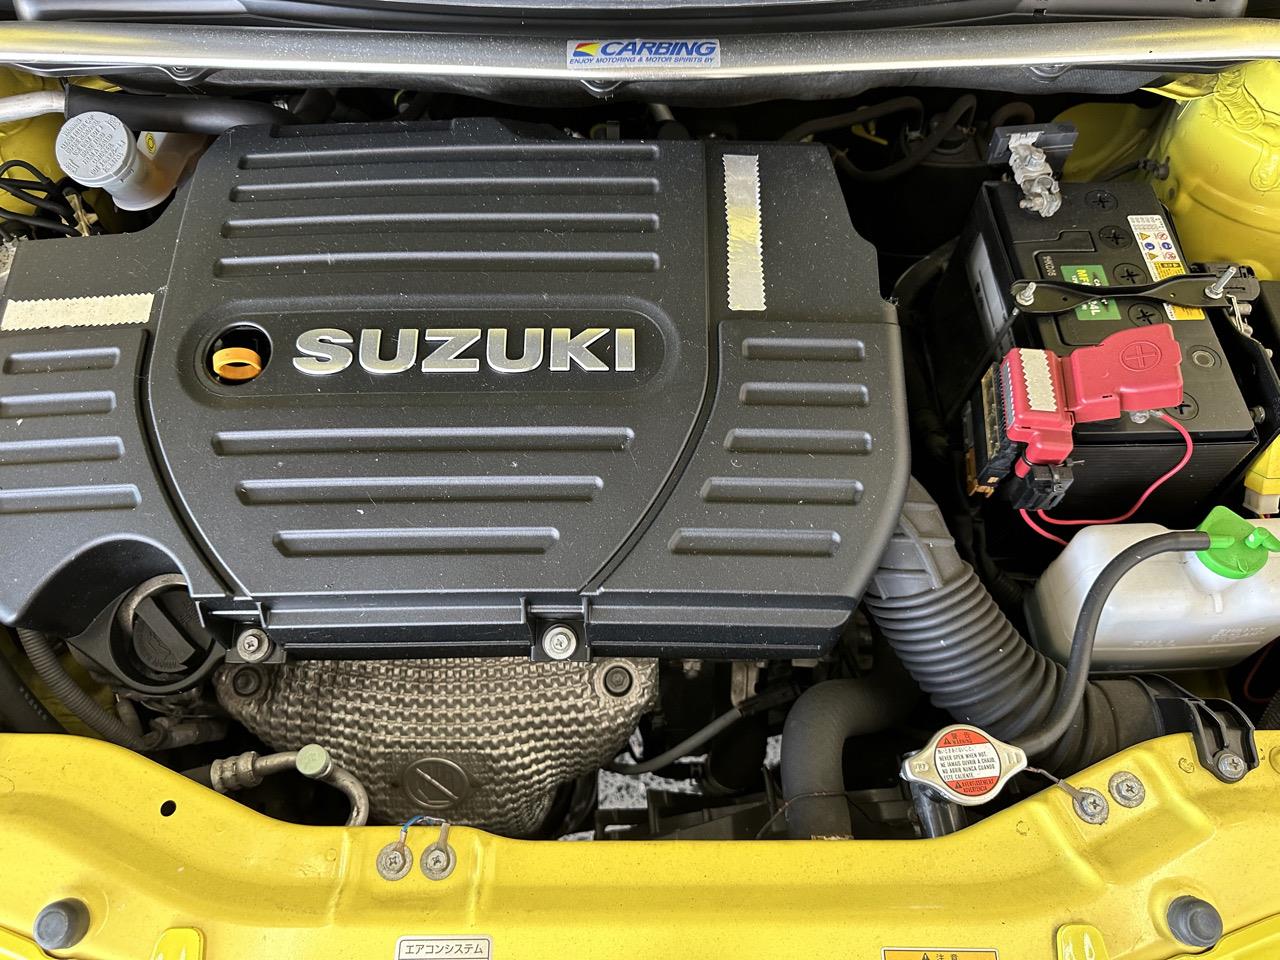 2012 Suzuki Swift Sport